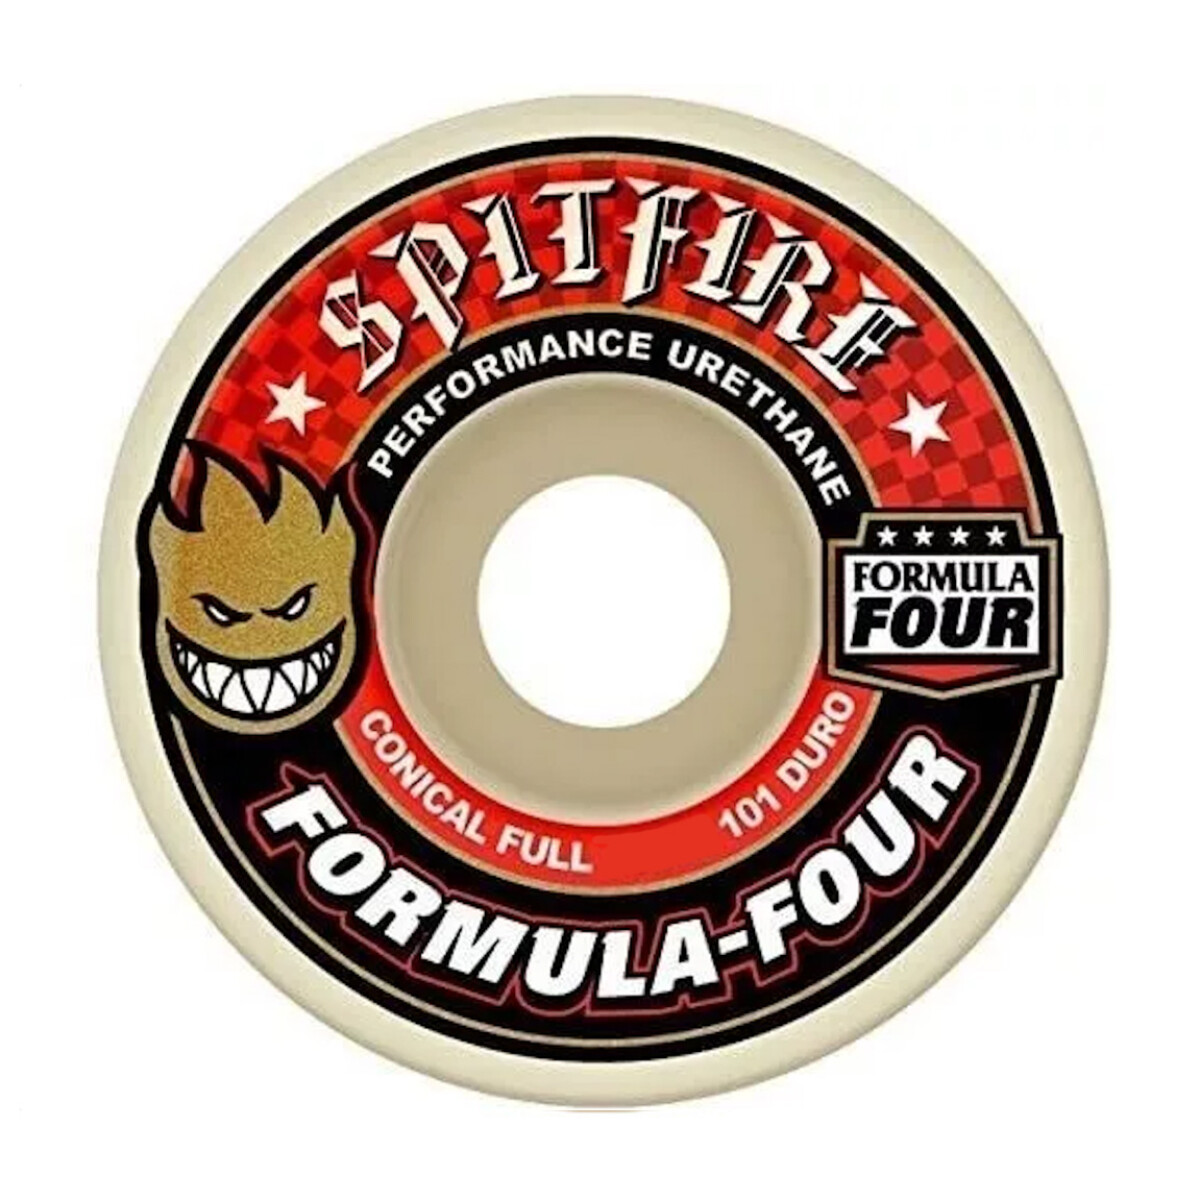 Ruedas de Skate Spitfire Formula Four Conical Full (Red) 53mm 101A 